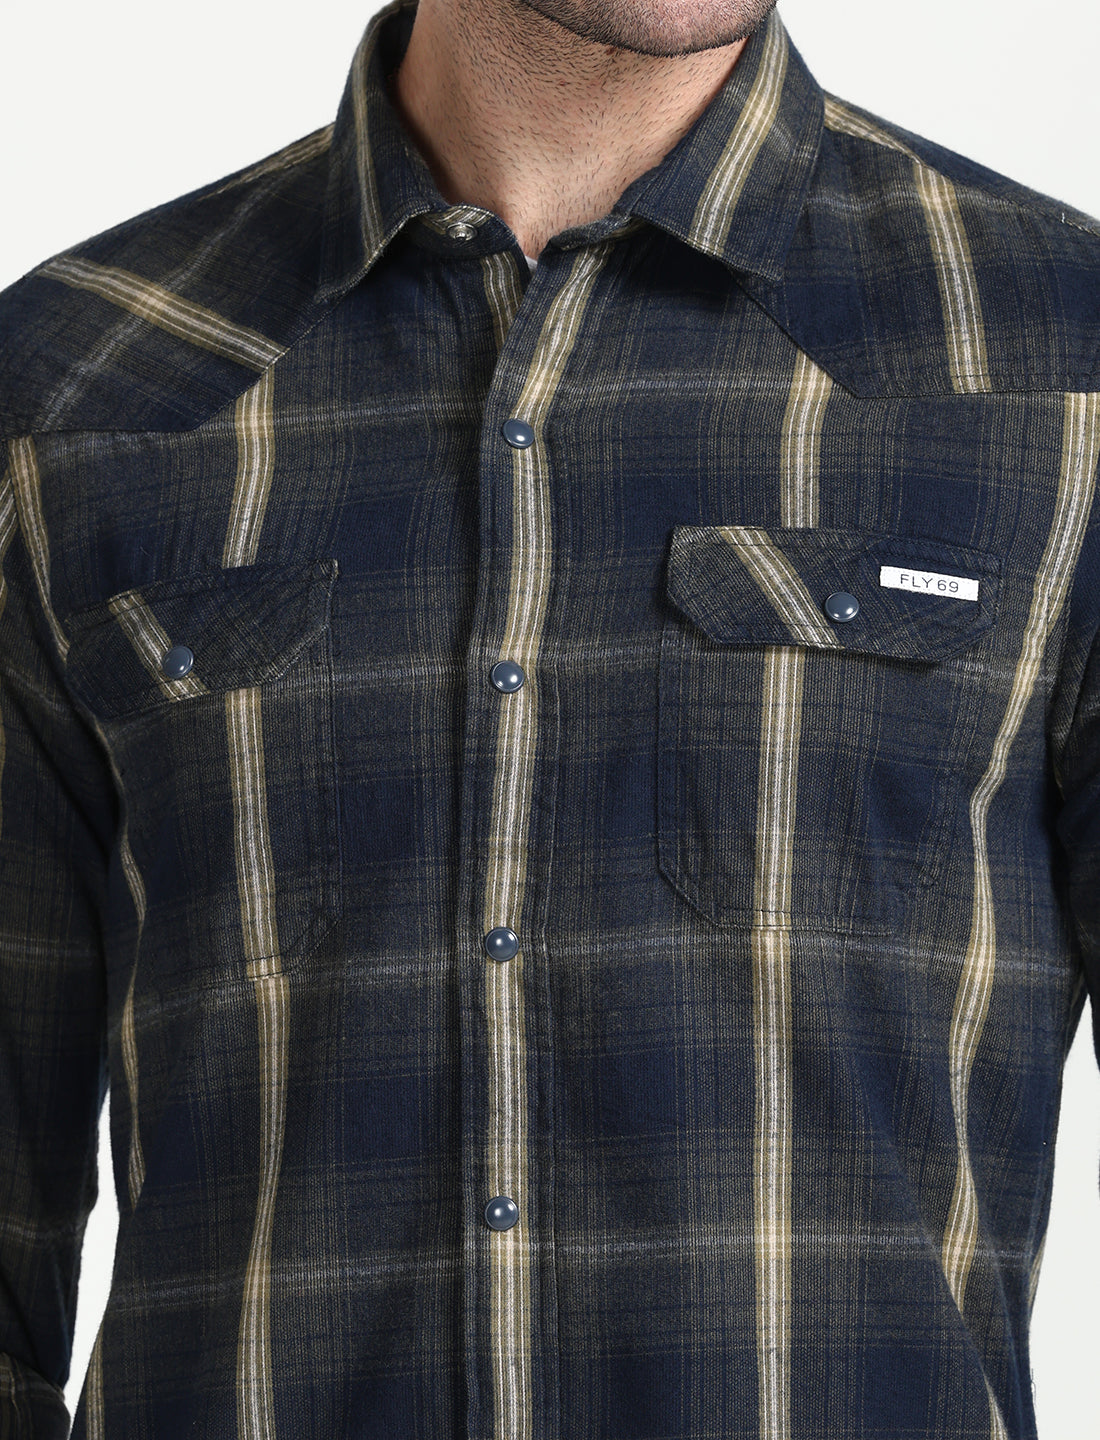 Navy Check Corduroy Full Sleeve Shirt for Men 